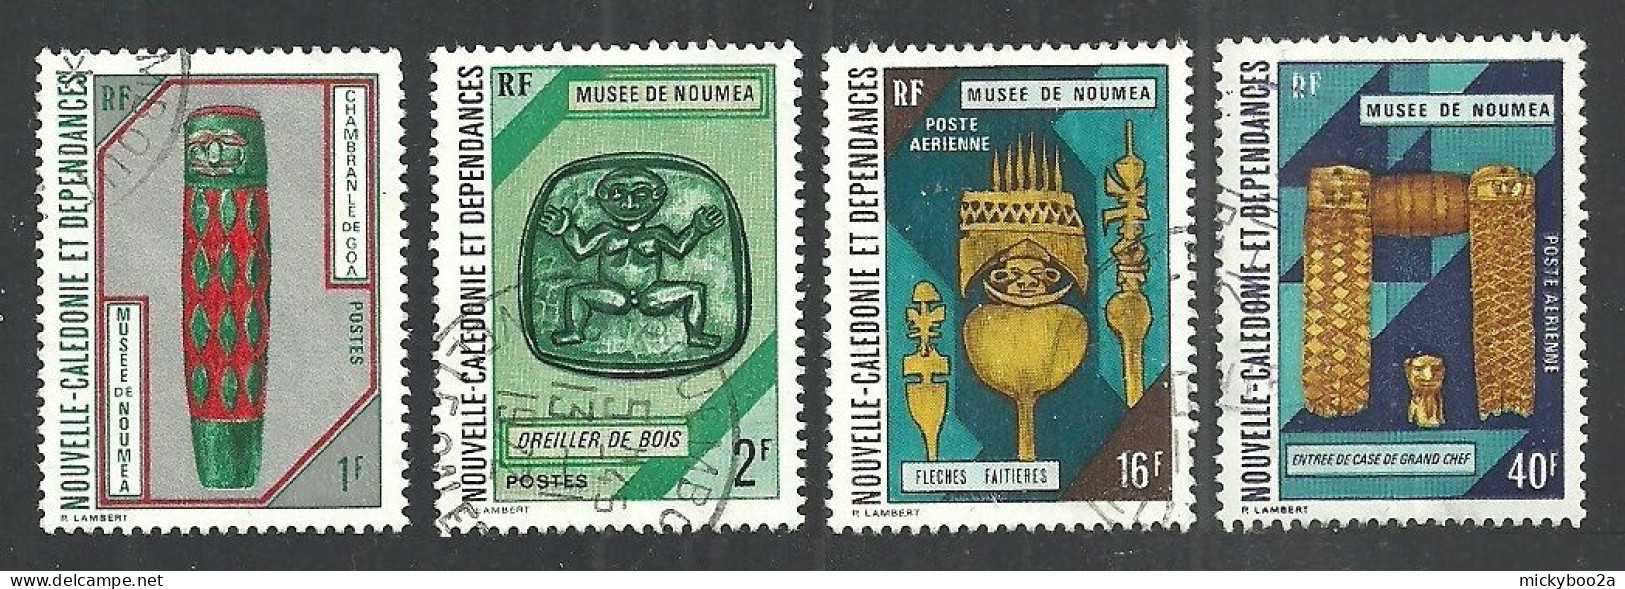 NEW CALEDONIA 1972 NOUMEA MUSEUM EXHIBITS VALUES USED - Oblitérés